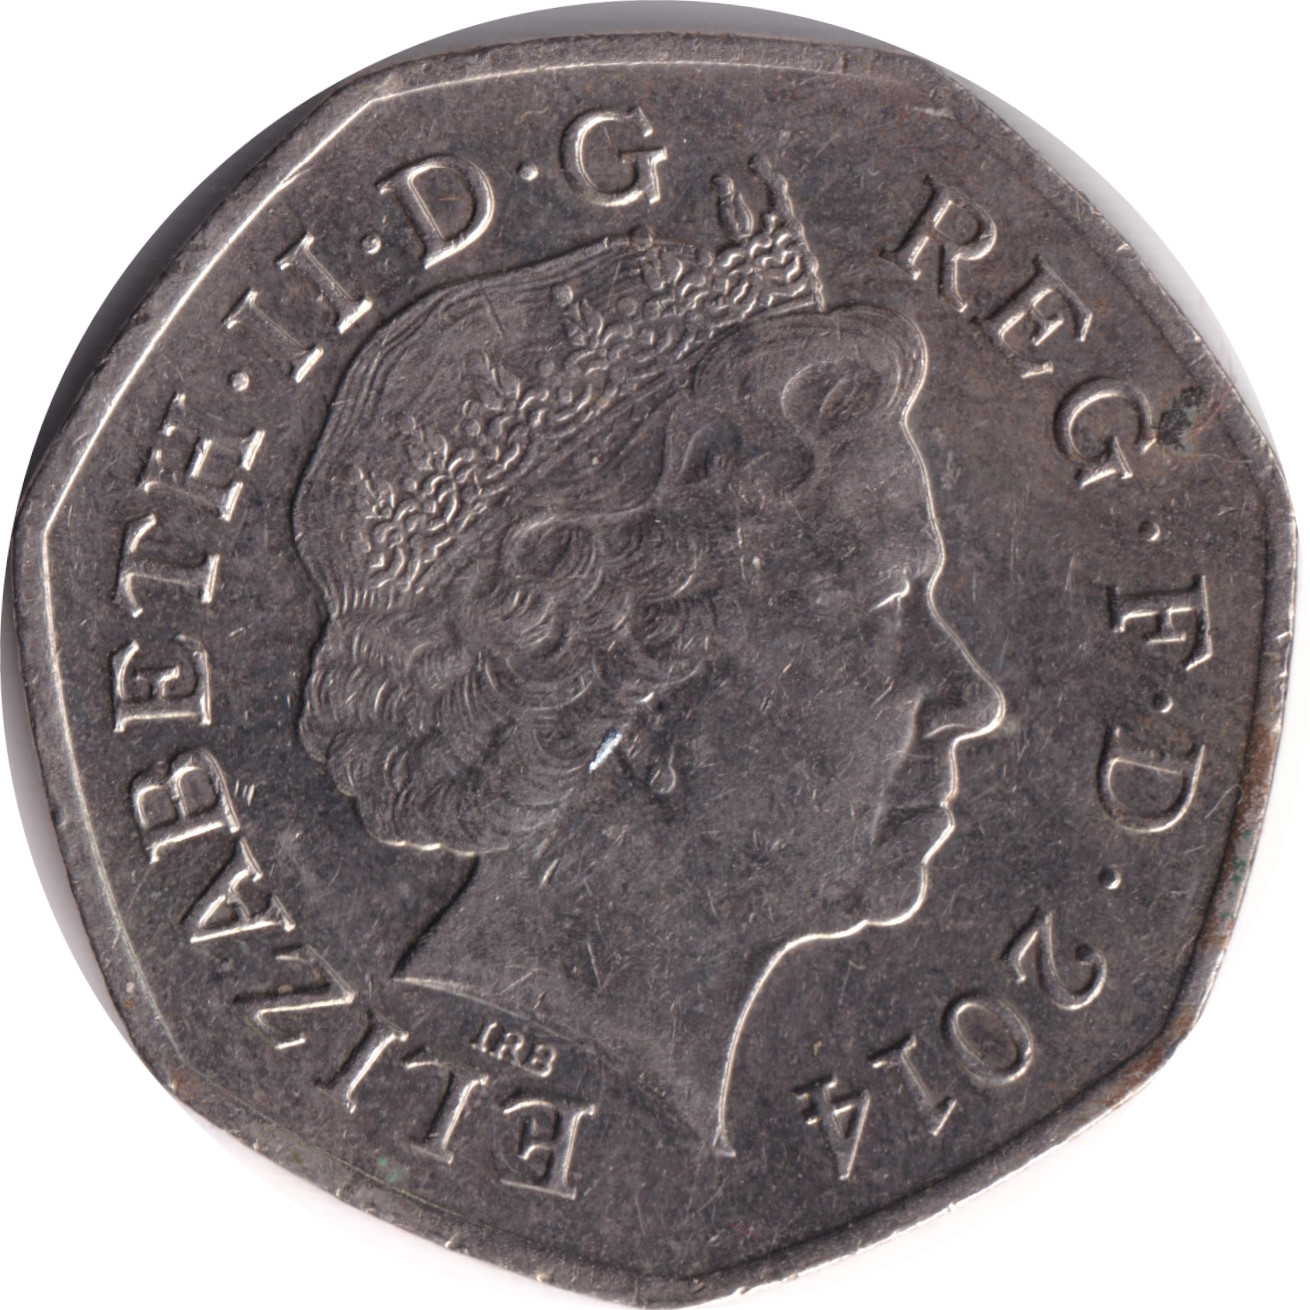 50 pence - Elizabeth II - Tête agée - Blason